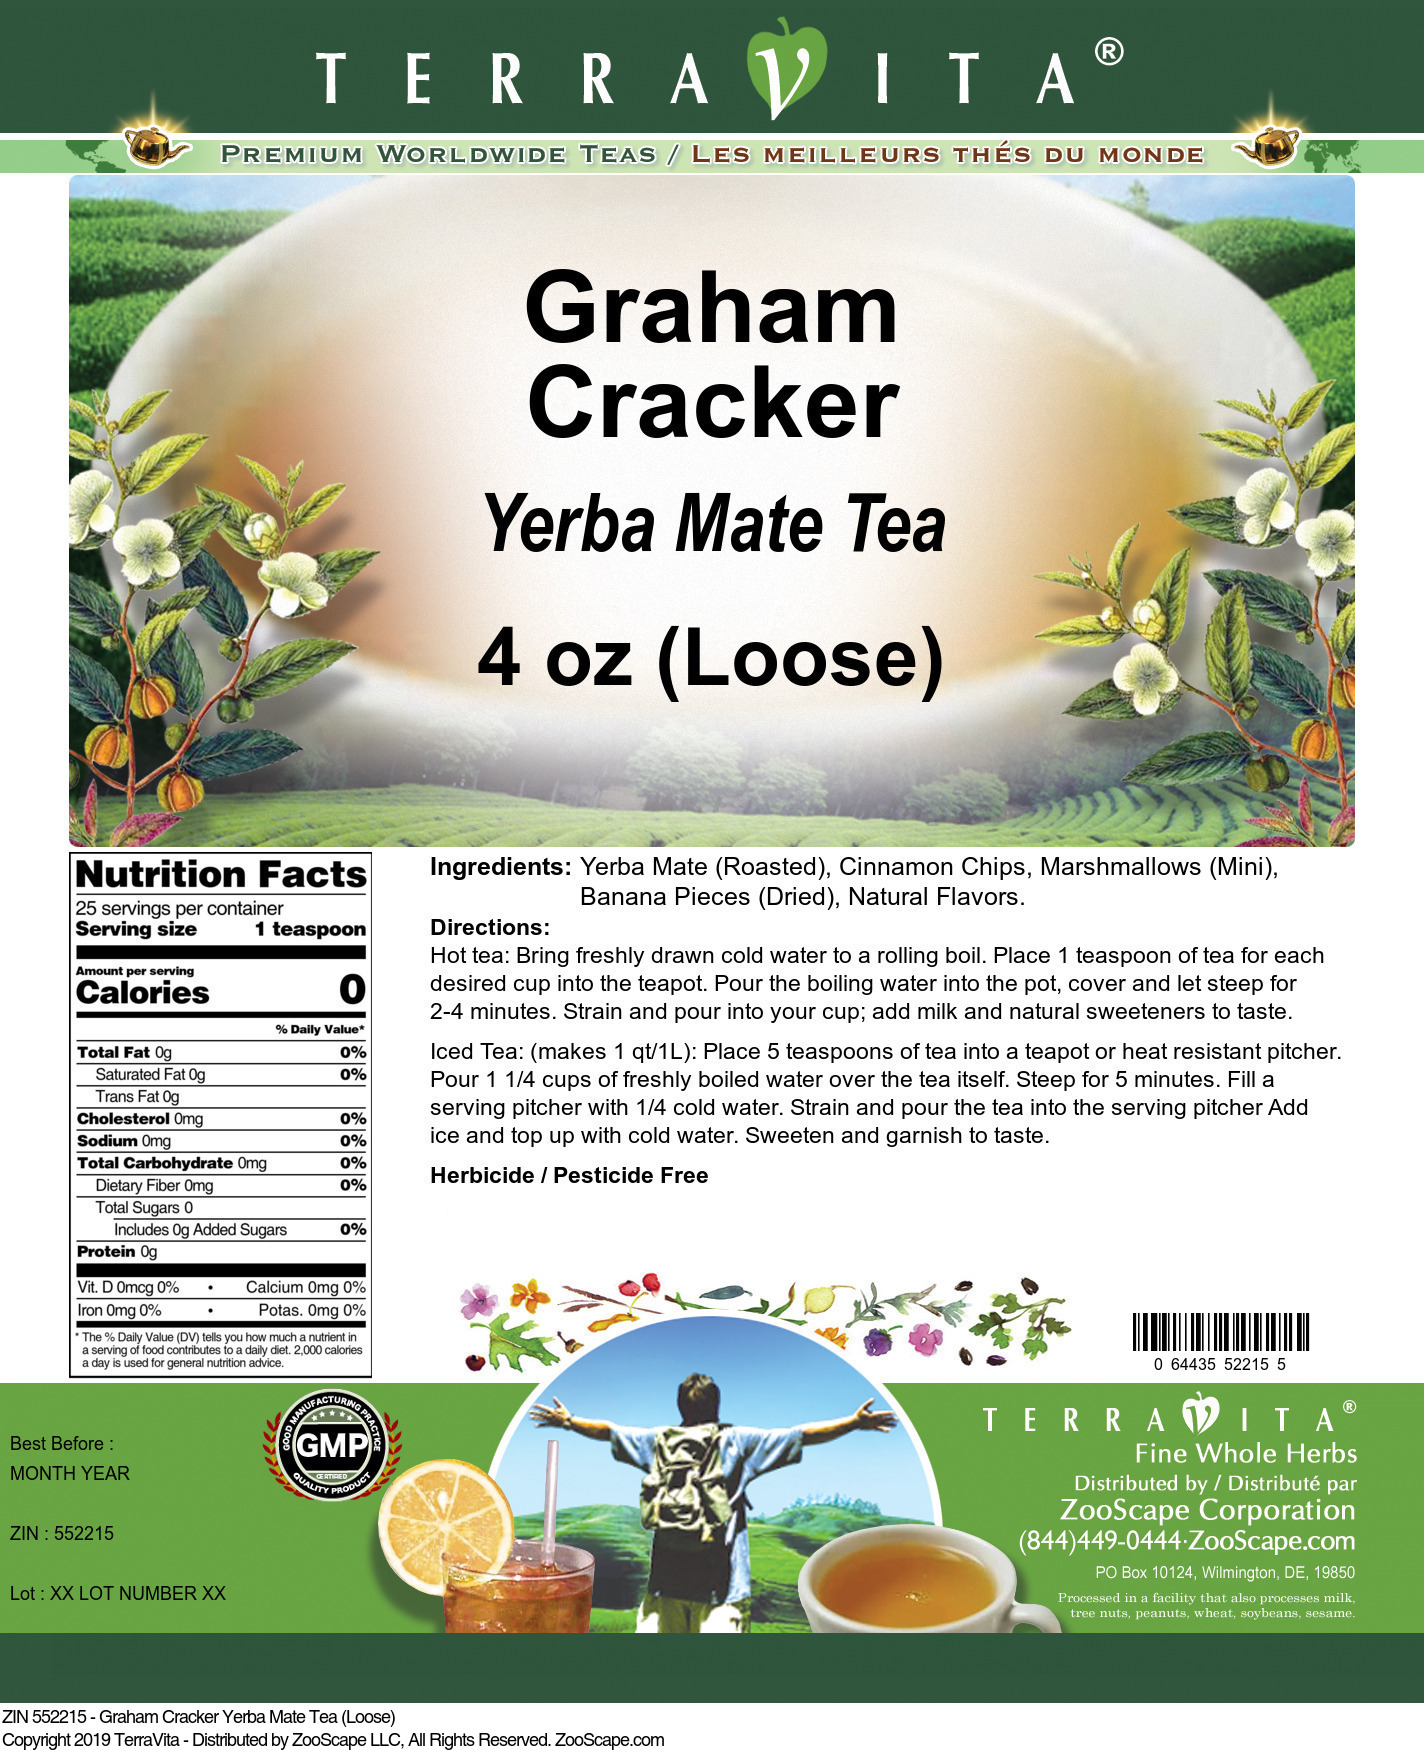 Graham Cracker Yerba Mate Tea (Loose) - Label